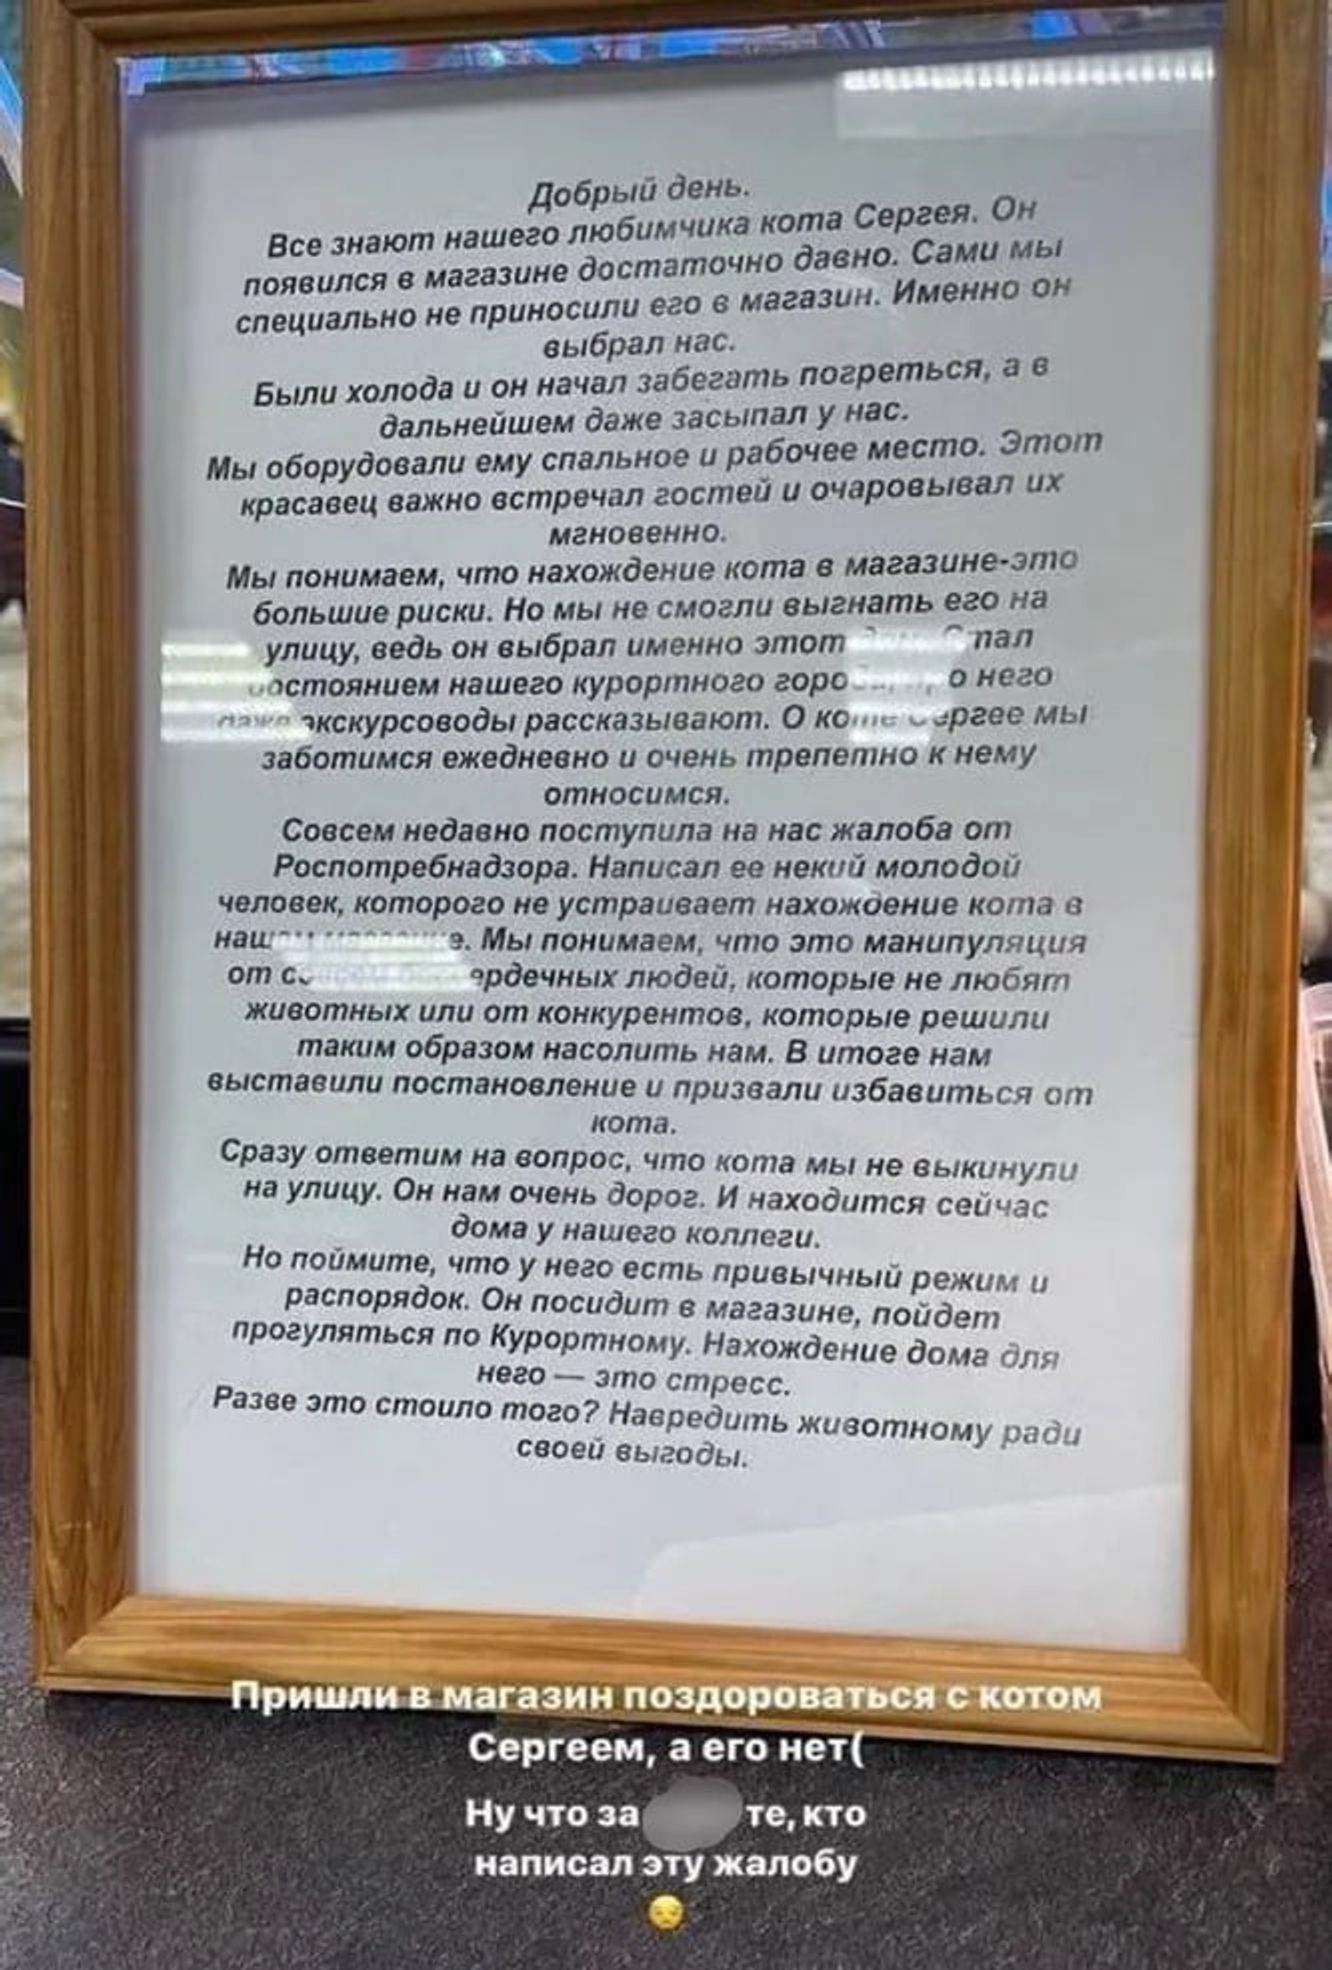 Табличка, которая появилась в магазине после исчезновения Сергея